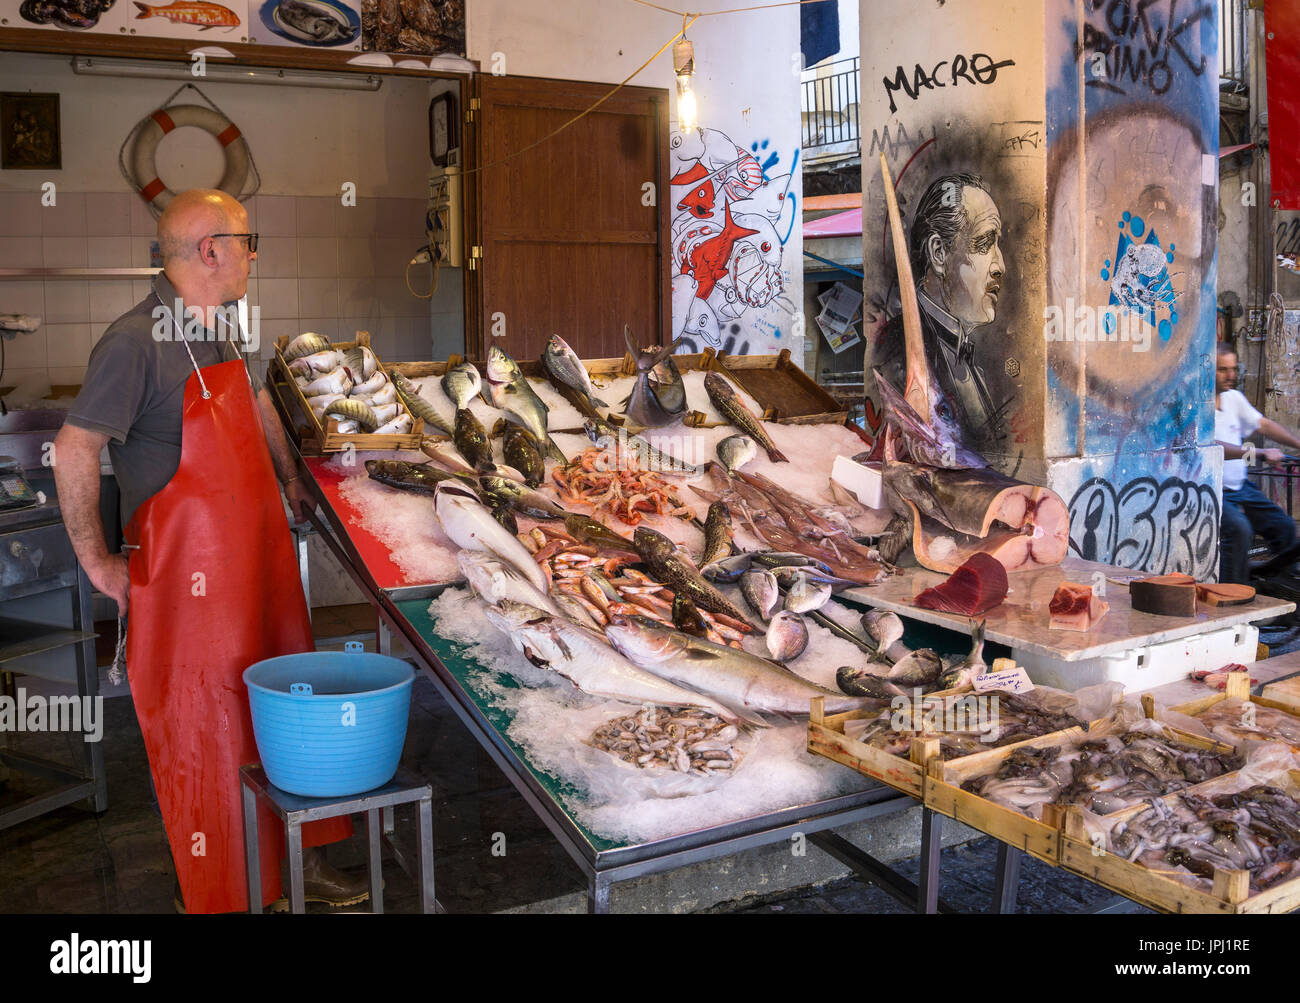 Street Art raffiguranti Marlon Brando come il padrino accanto a una pressione di stallo pescivendoli nel mercato della Vucciria di Palermo, in Sicilia. Foto Stock